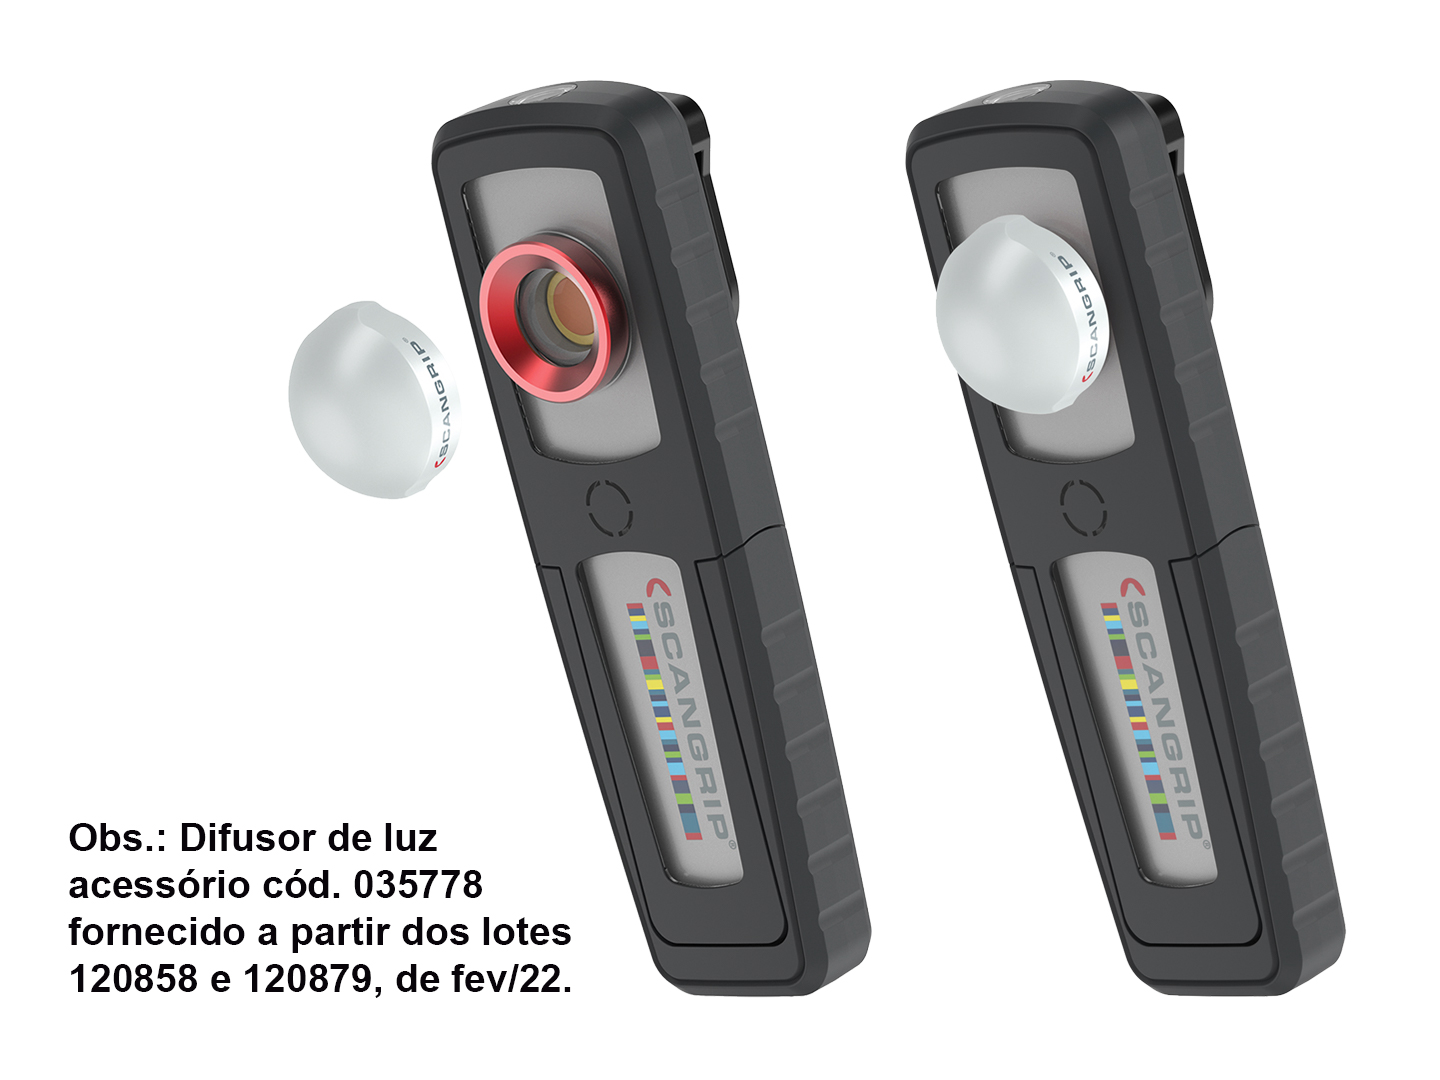 Produto Raven 035651 - Lanterna portátil Scangrip Sunmatch 3, para ajuste de cores, trabalhos de pintura e polimento. <ul><li>Características: </li><li>a) LED COB frontal, que produz 500 / 250 lúmens (2º / 1º estágio) e possui IRC (Índice de Reprodução de Cores) ultra alto (96), </li><li>b) Função AllDaylight: luz do LED COB ajustável em 5 opções de temperatura de cor, de 2.500 Kelvin (luz mais quente / alaranjada) até 6.500 Kelvin (luz mais fria / azulada), </li><li>c) indicador (com LEDs) da temperatura de cor em uso, </li><li>d) acompanha difusor de luz acessório 035778*, que expande e ao mesmo tempo suaviza a luz emitida pelo LED COB frontal, minimizando ofuscamentos, reflexos e sombras duras, além de ser especialmente indicado para facilitar a identificação de pontos altos, imperfeições e partículas de poeira durante processos de funilaria e pintura, </li><li>e) LED superior, que produz 200 lúmens, 4.000 Kelvin e possui IRC alto (95), </li><li>f) bateria recarregável, com autonomia de até 4h e indicador de carga com LEDs, </li><li>g) carcaça robusta, resistente a impactos externos (IK07) e a quedas de até 1m, à prova de poeira e de jatos d’água (IP65), além de possuir formato ergonômico e acabamento macio, </li><li>h) recursos para deixar as mãos livres: gancho traseiro escamoteável, clipe para prender a lanterna no cinto ou no bolso e base em “U”, imantada e basculante em 90° para frente e para trás da lanterna, </li><li>i) lente de vidro resistente a solventes e removível para limpeza. </li><li>Acompanha doca com carregador bivolt e cabo USB de 1m. </li><li>Substitui a Sunmatch (035416) e a Sunmatch 2 (035445). </li><li>*A partir dos lotes 120858 e 120879, de fev/22.</li></ul> - Iluminação